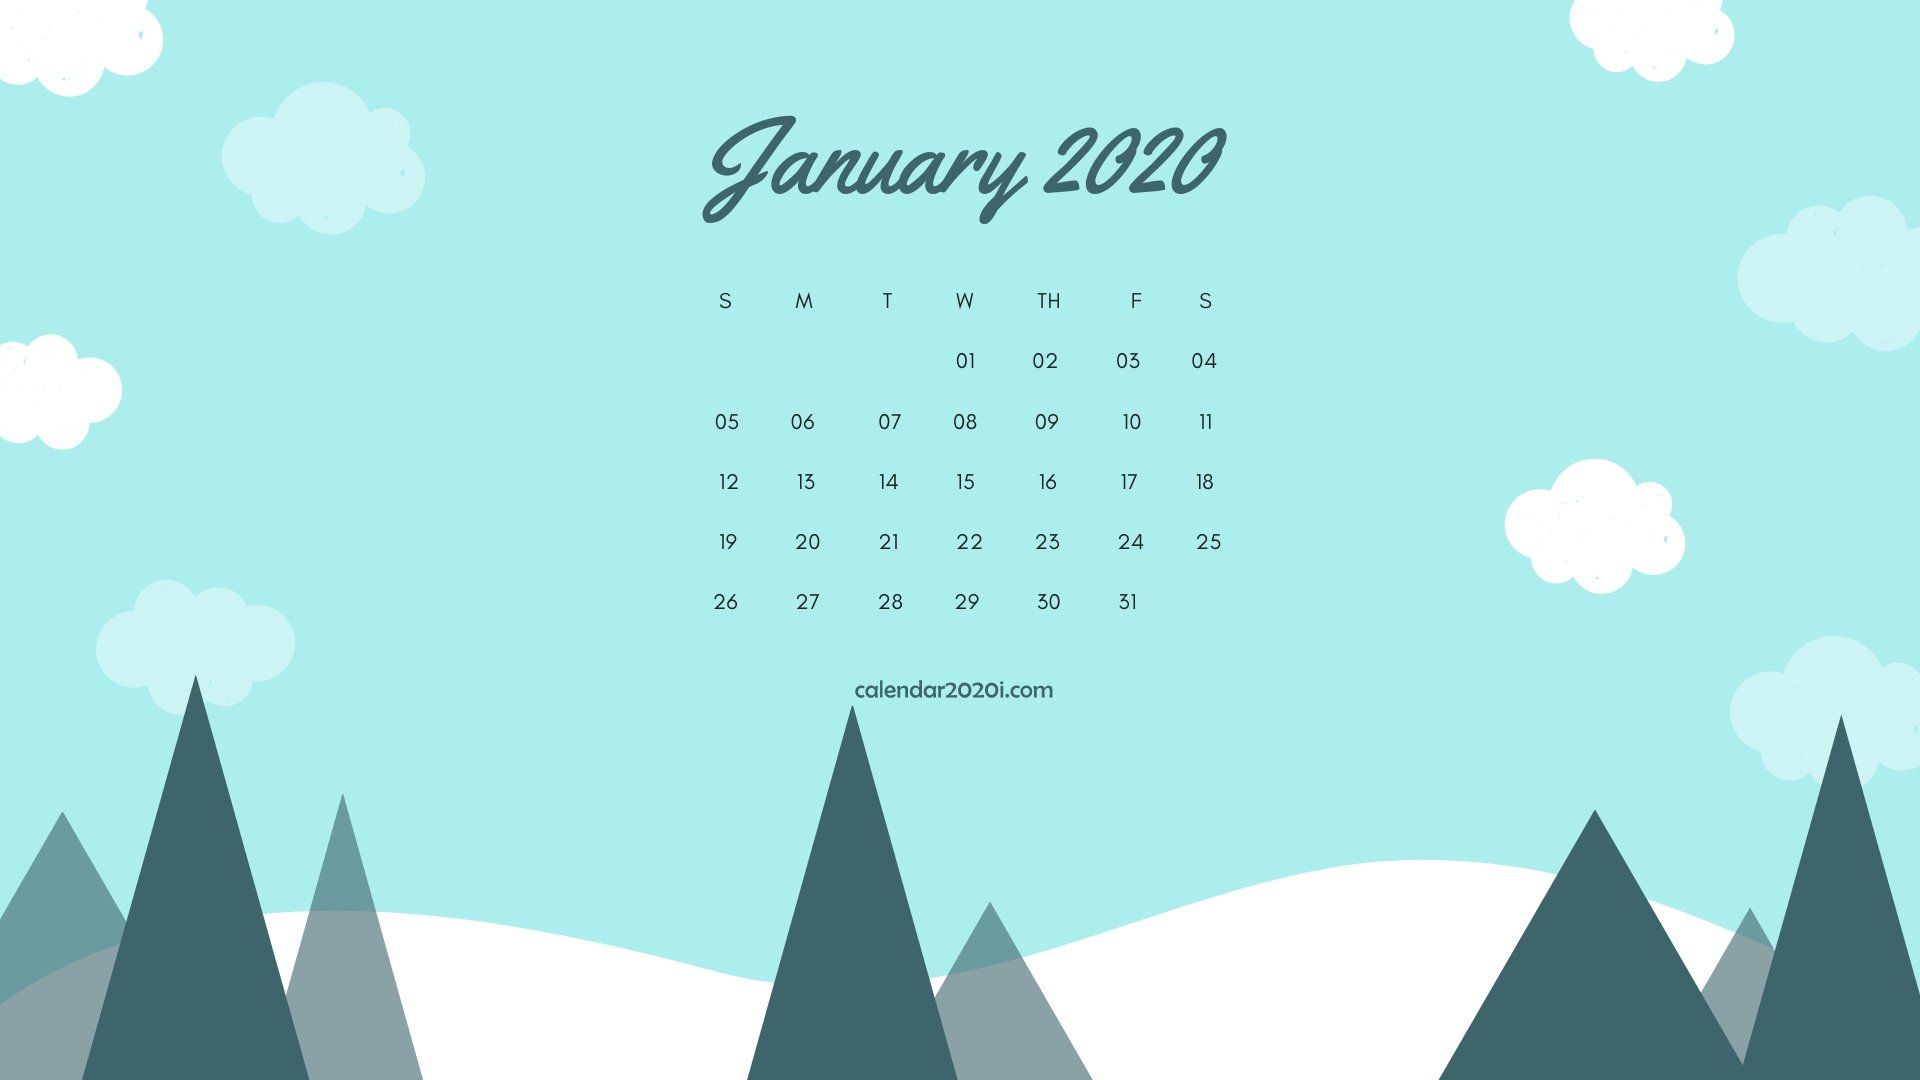 53+] 2020 Calendar Phone Wallpapers - WallpaperSafari